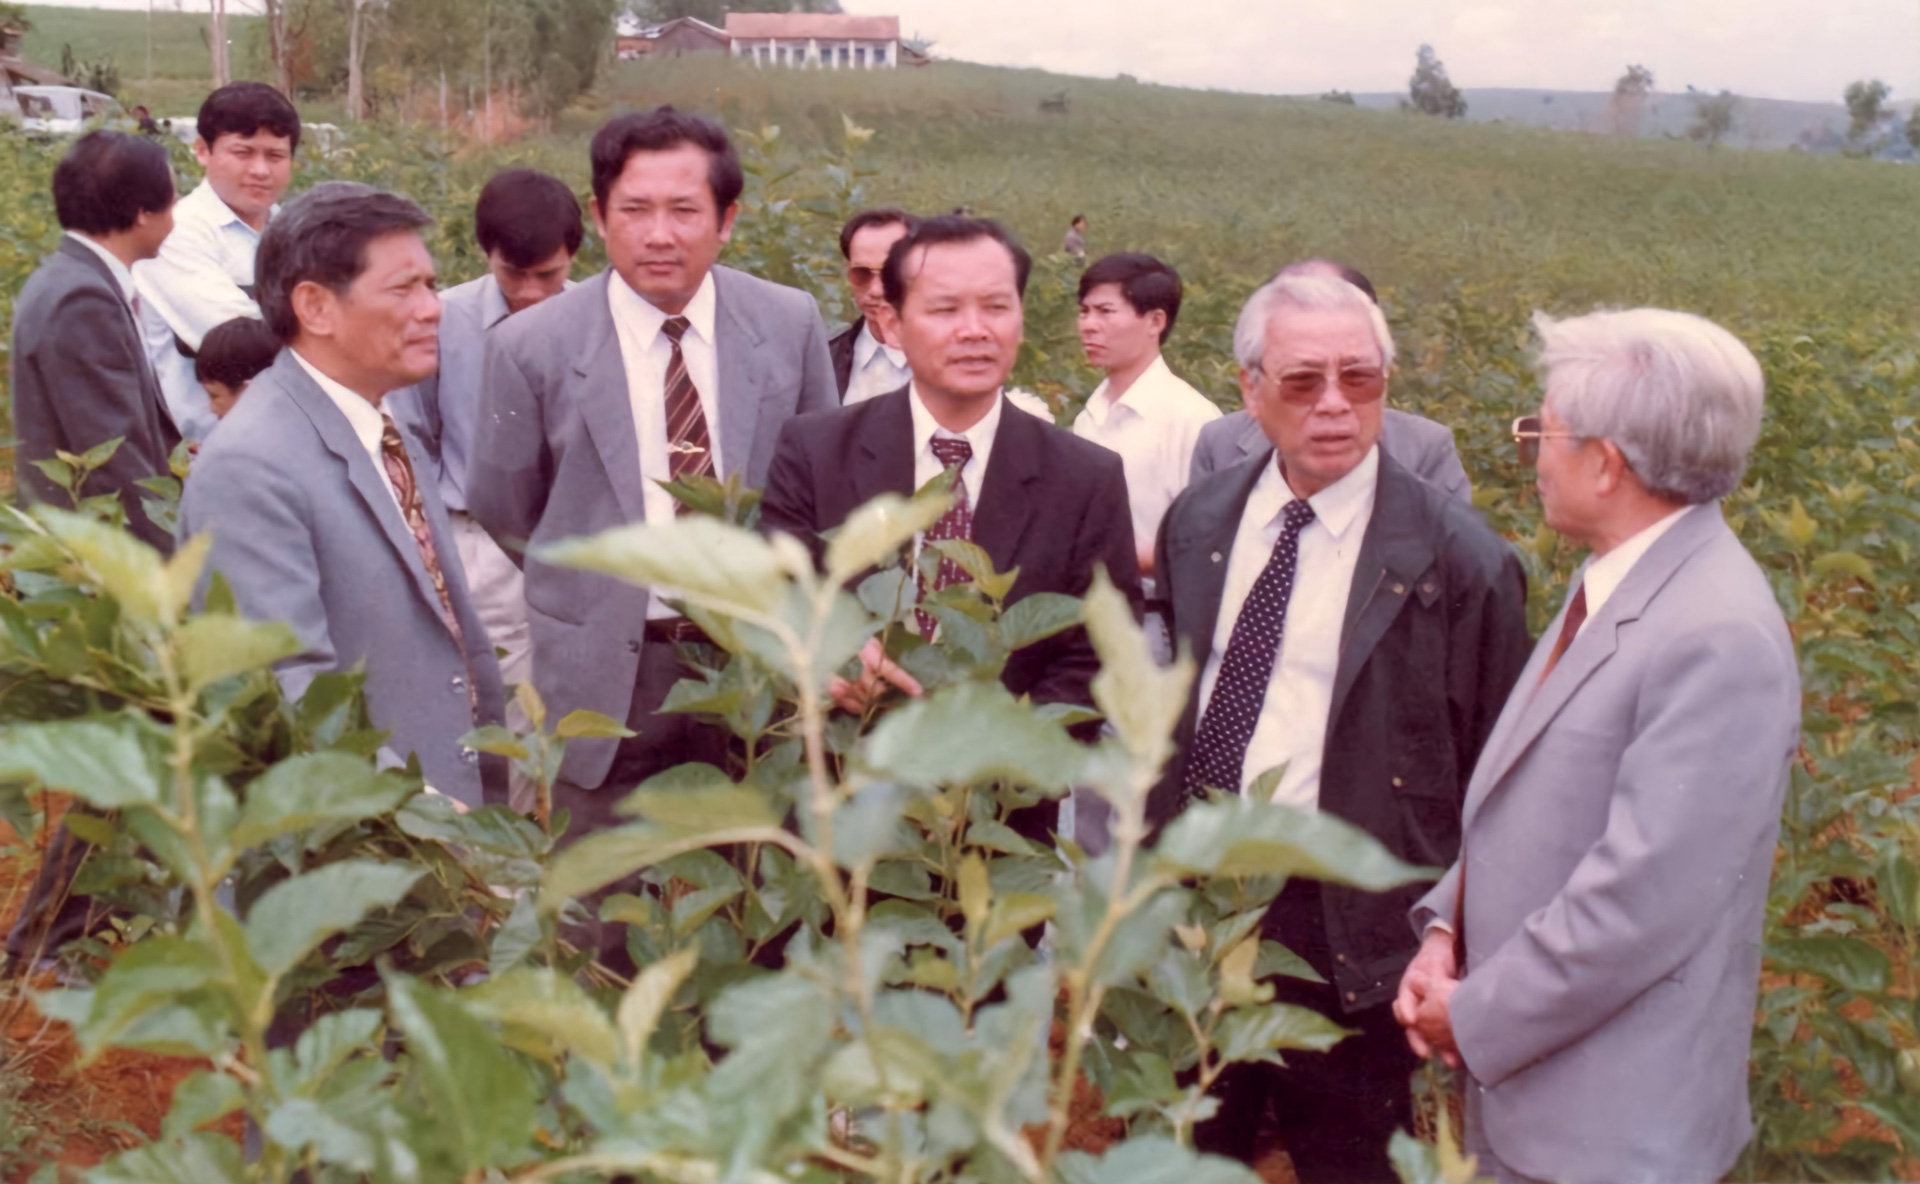 Thủ tướng Võ Văn Kiệt (đeo kính đen) và các đồng chí  Bí thư, Chủ tịch tỉnh Lâm Đồng thăm nông trường dâu Kohinda 1993-Ảnh Tư liệu